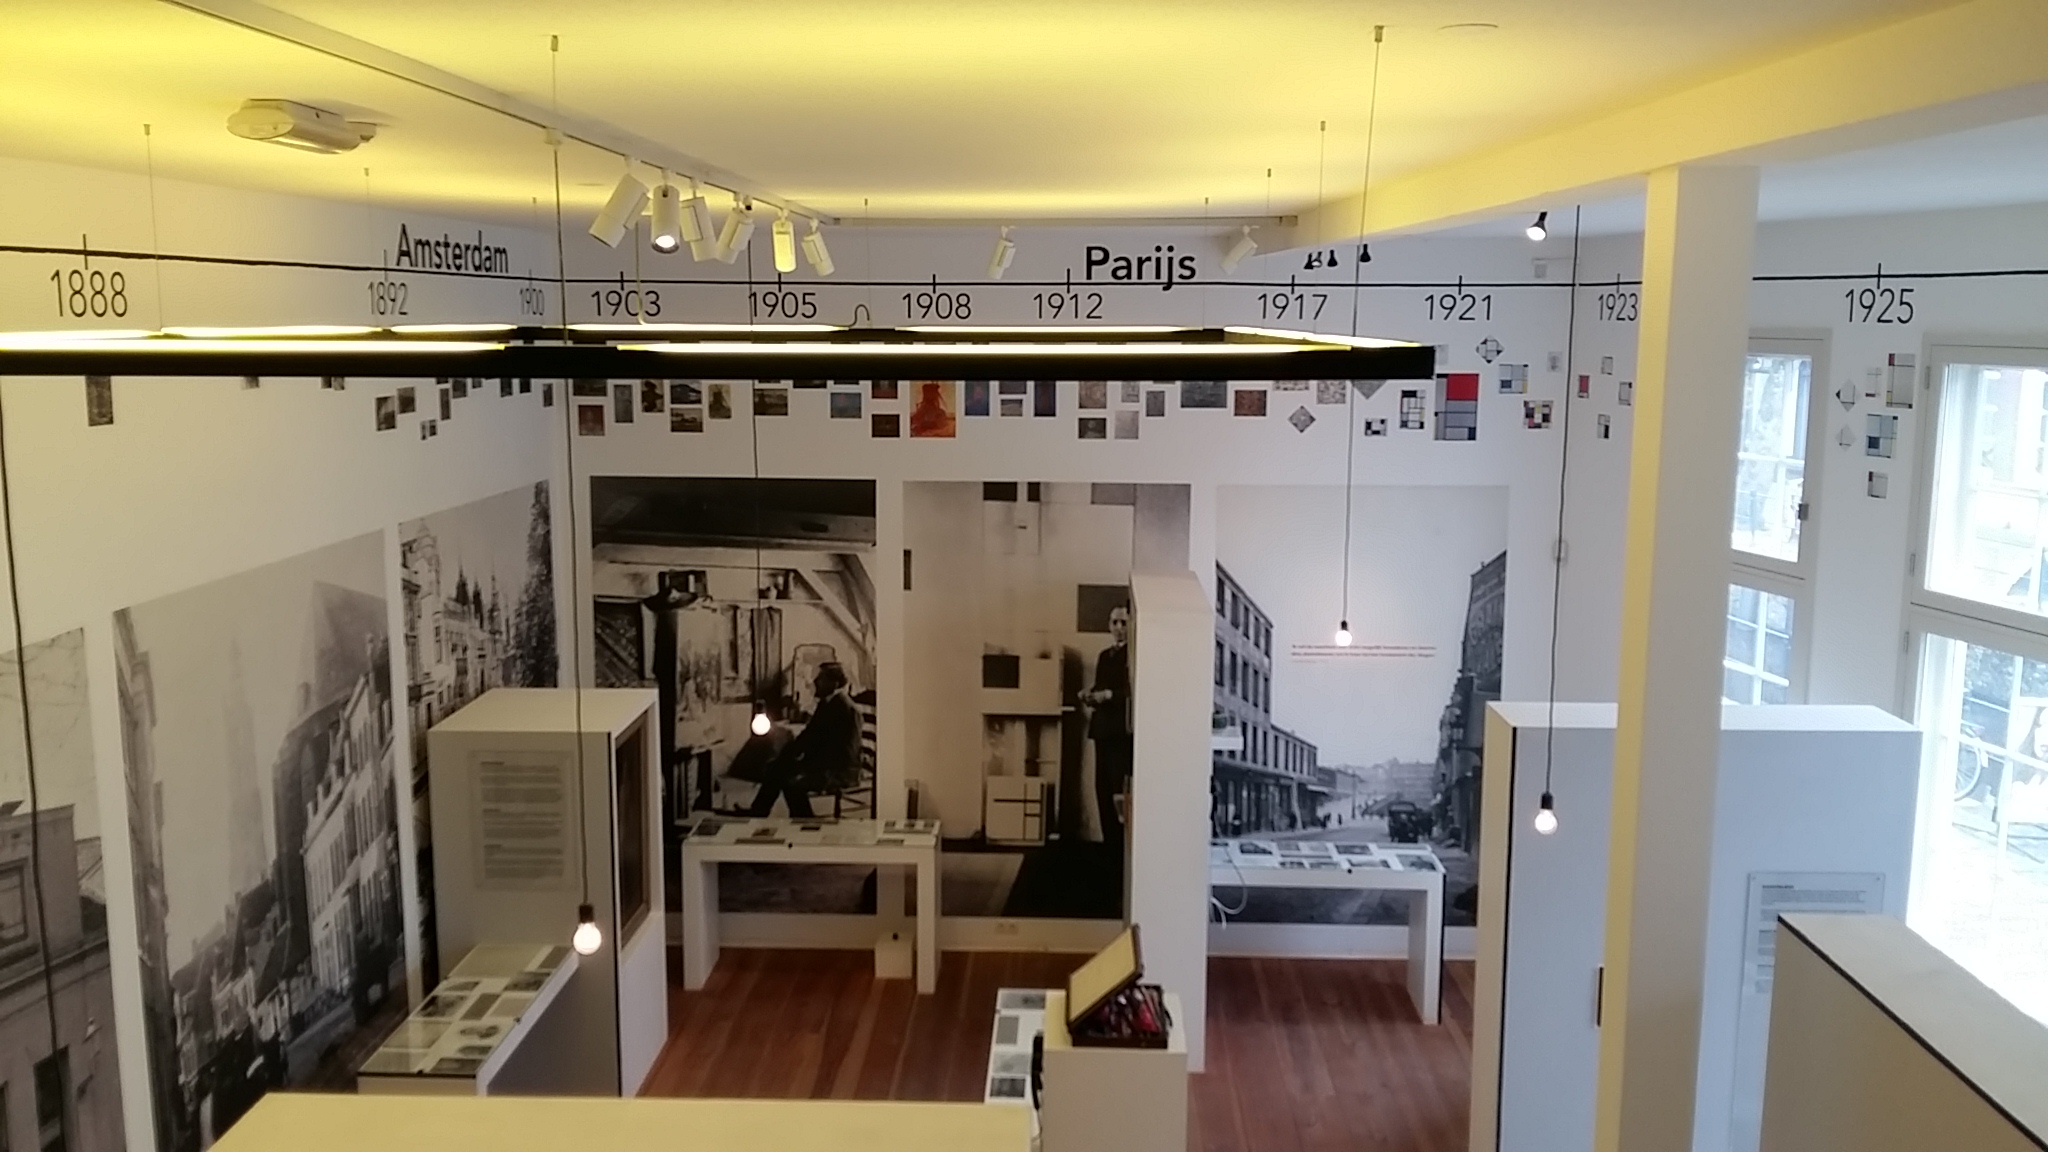 Amersfoort-Mondriaanhuis-overzicht-van-zijn-leven-en-werk-foto-Wilma-Lankhorst